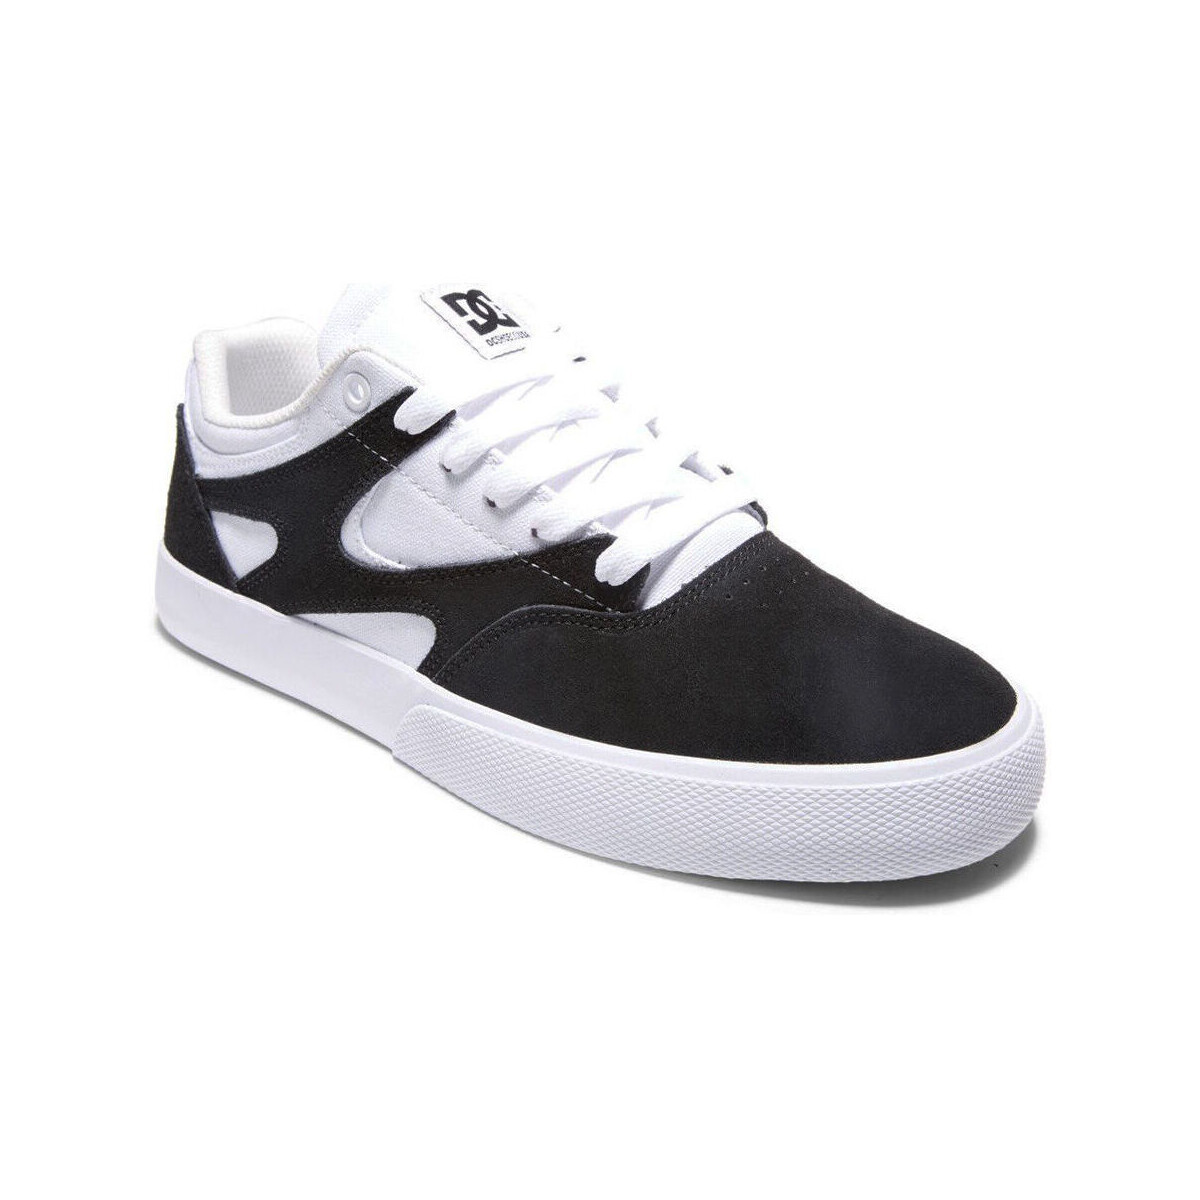 Sneakers DC Shoes Kalis vulc WHITE/BLACK/BLACK (WLK)